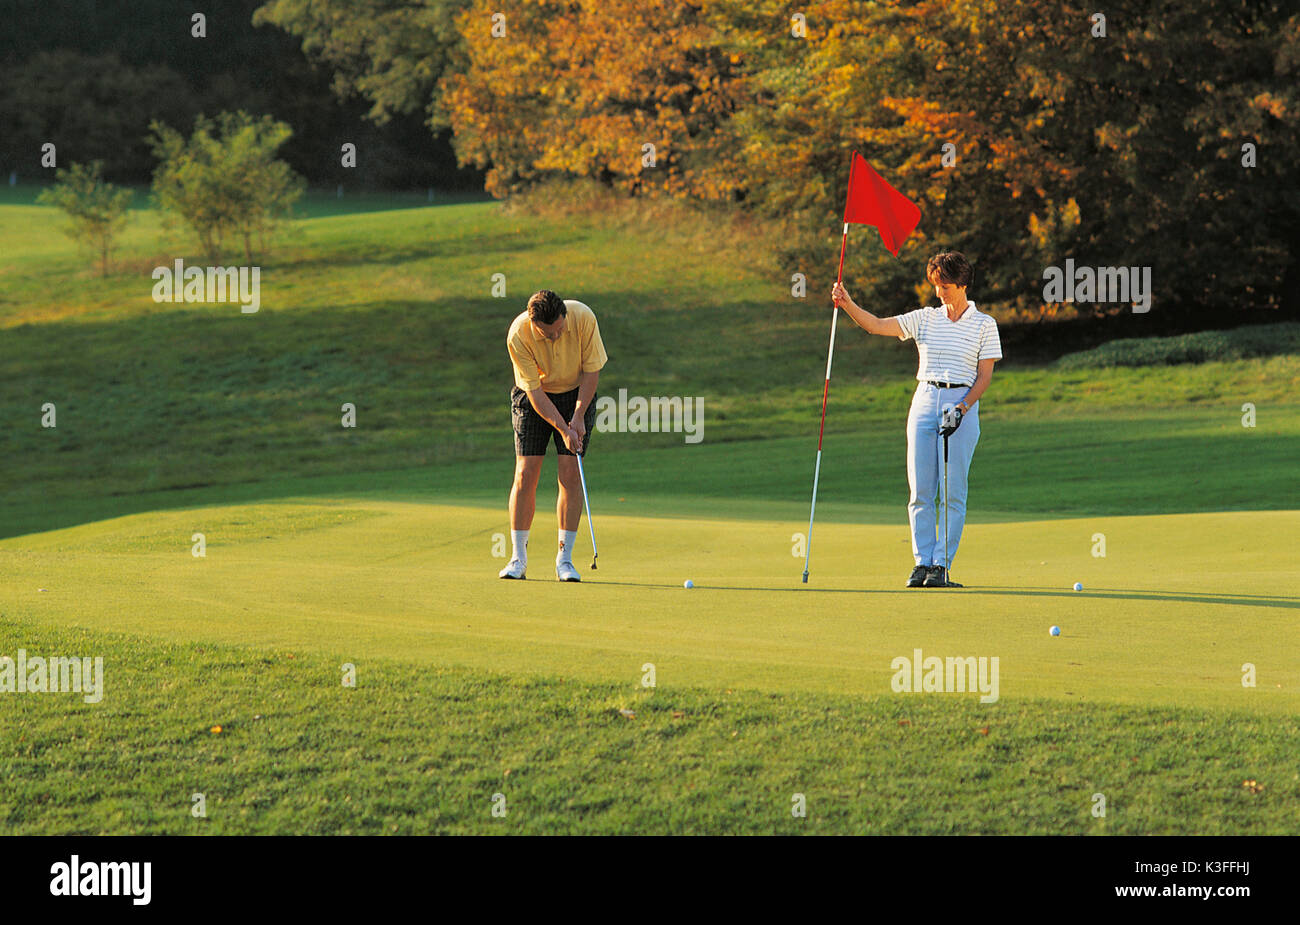 Paar auf dem Golfplatz, Golf Club von Burgwalden Stockfotografie - Alamy